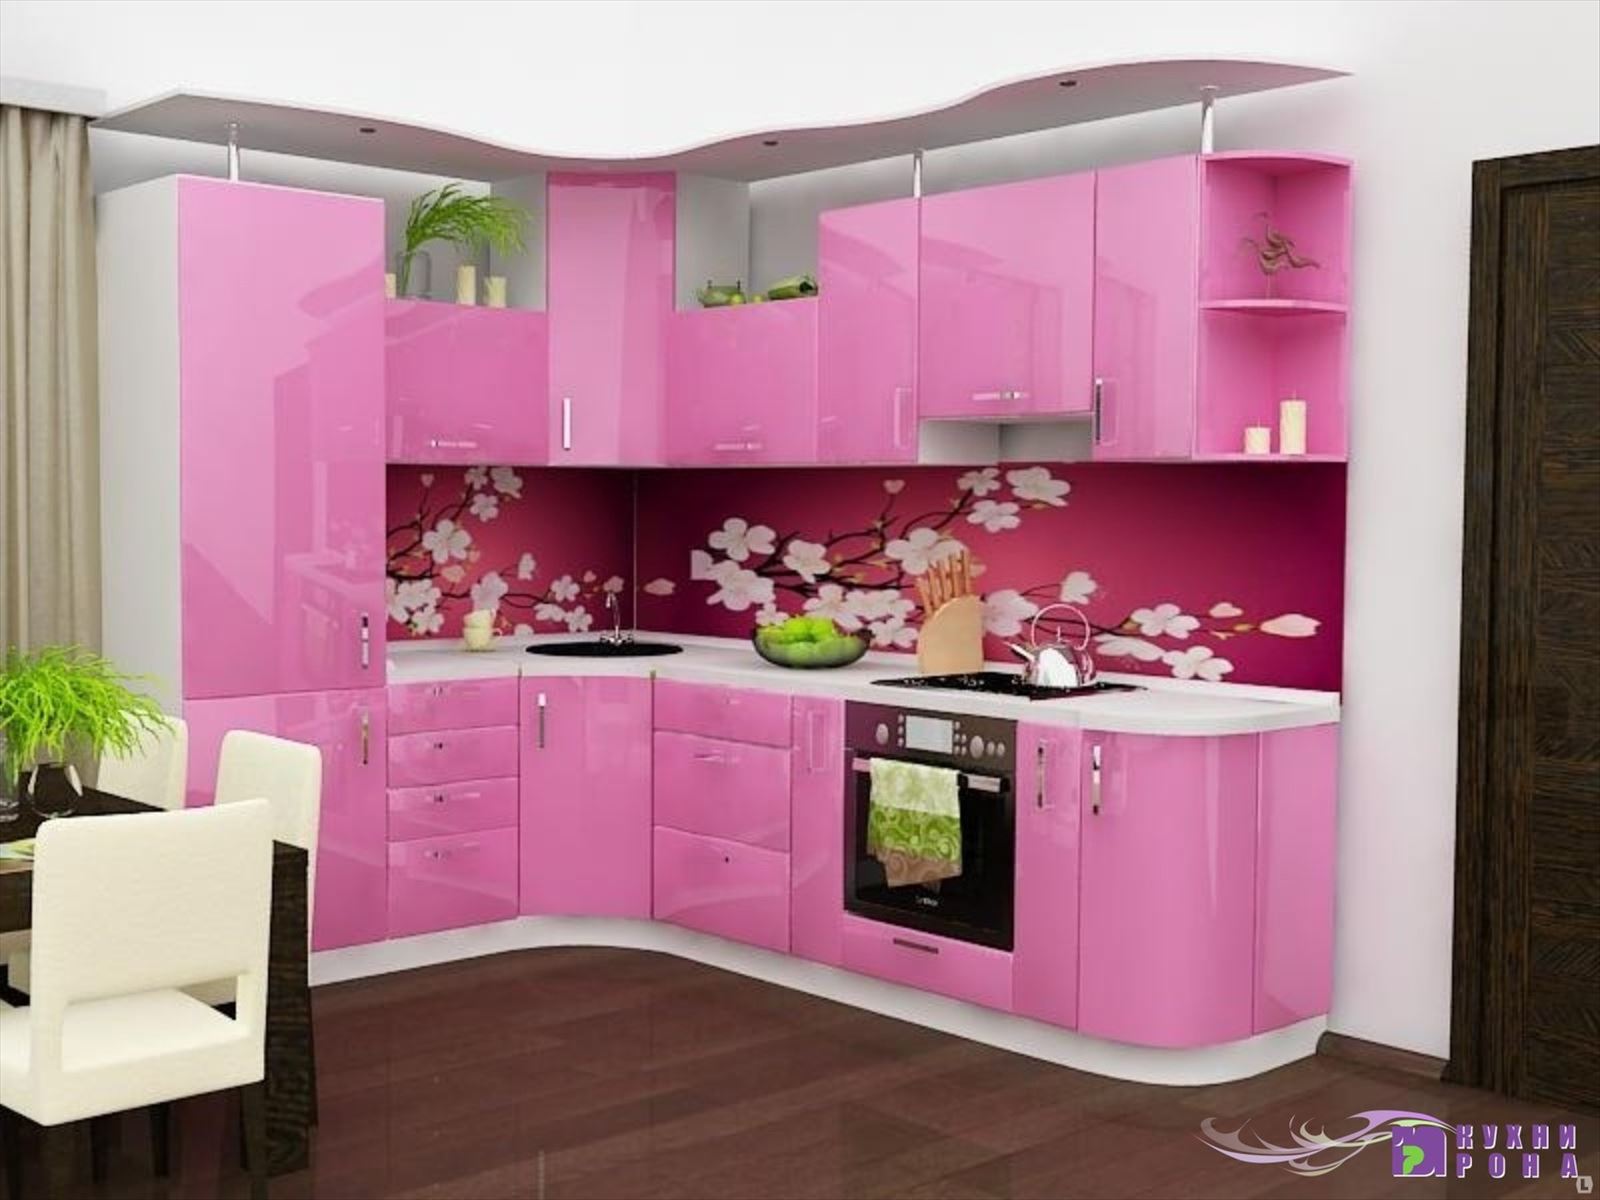 Кухонные гарнитуры уфе б у. Кухонные гарнитуры. Кухонный гарнитур розовый. Красивый кухонный гарнитур. Угловые кухни.